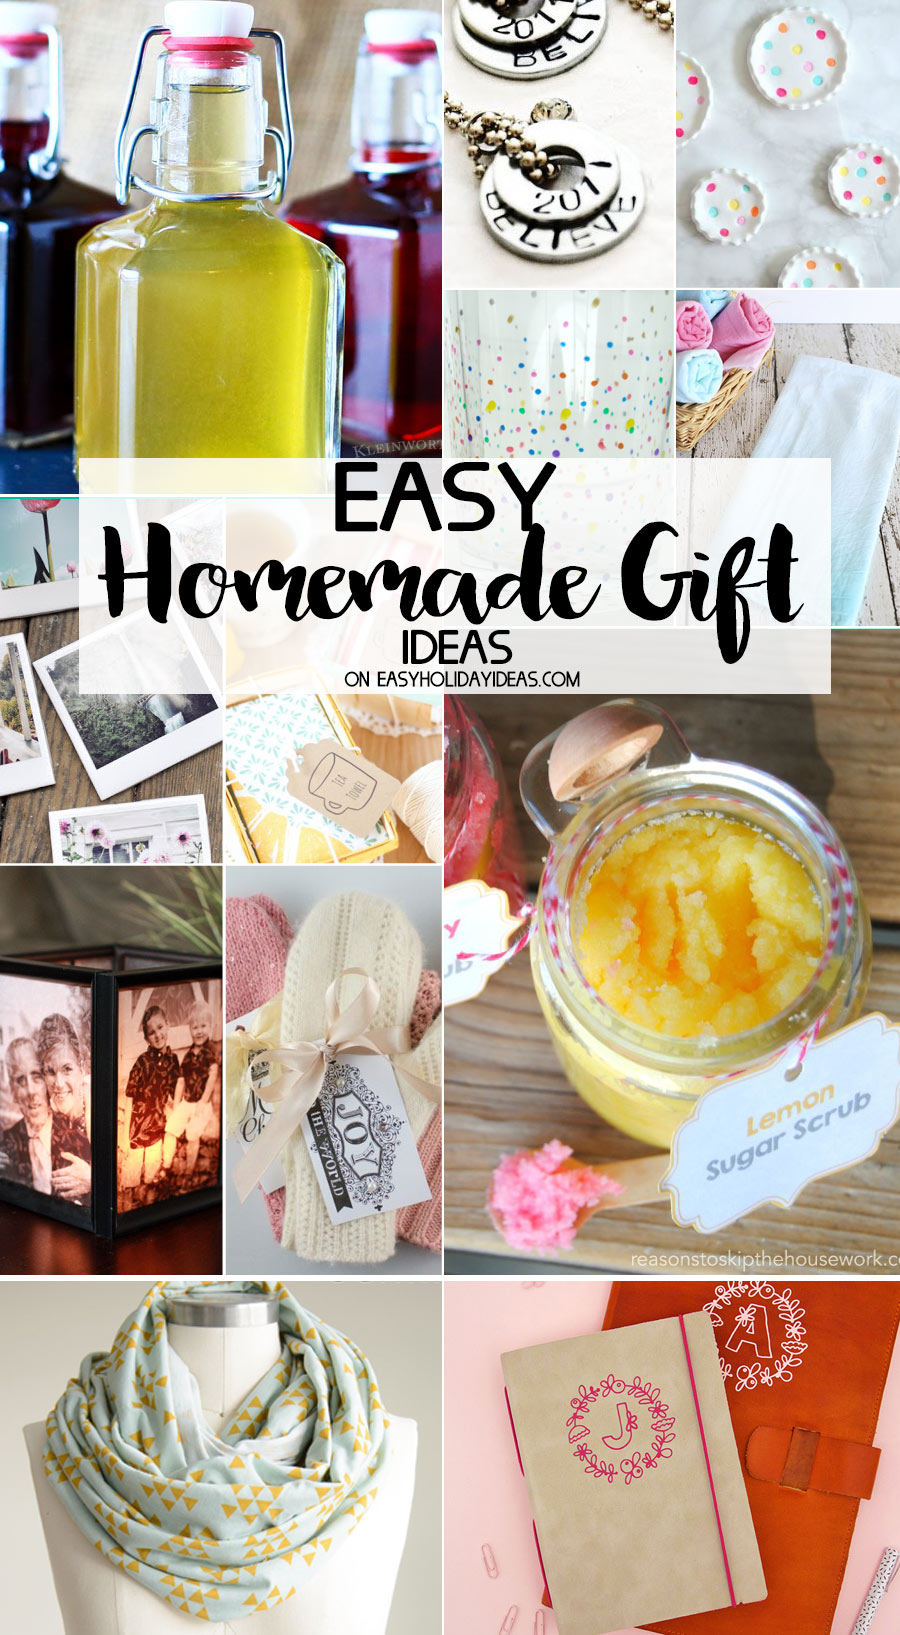 Easy Homemade Gift Ideas